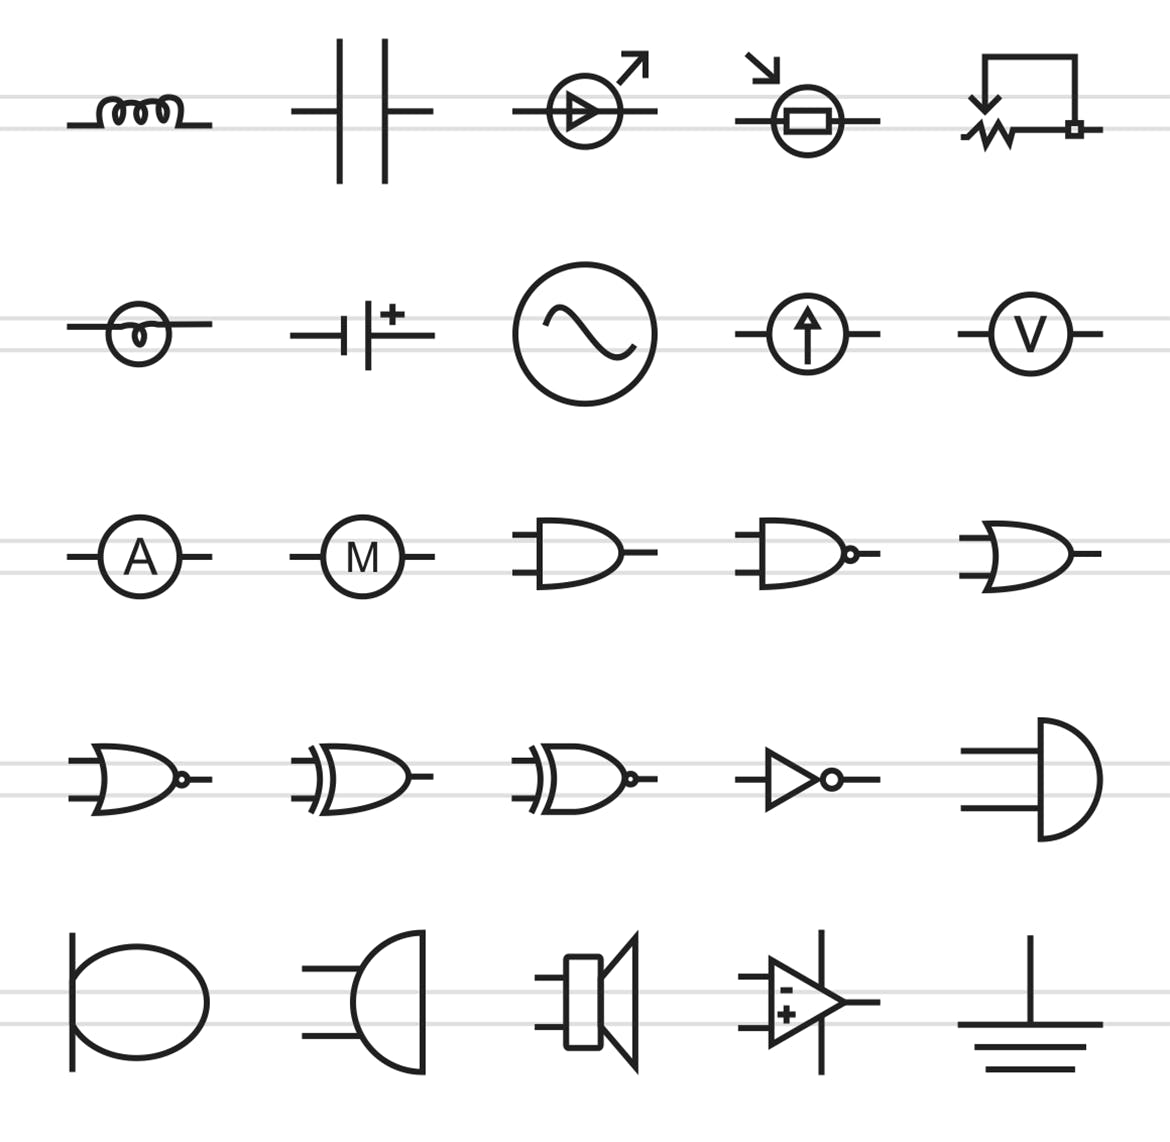 50枚电路线路板主题矢量线性蚂蚁素材精选图标 50 Electric Circuits Line Icons插图(2)